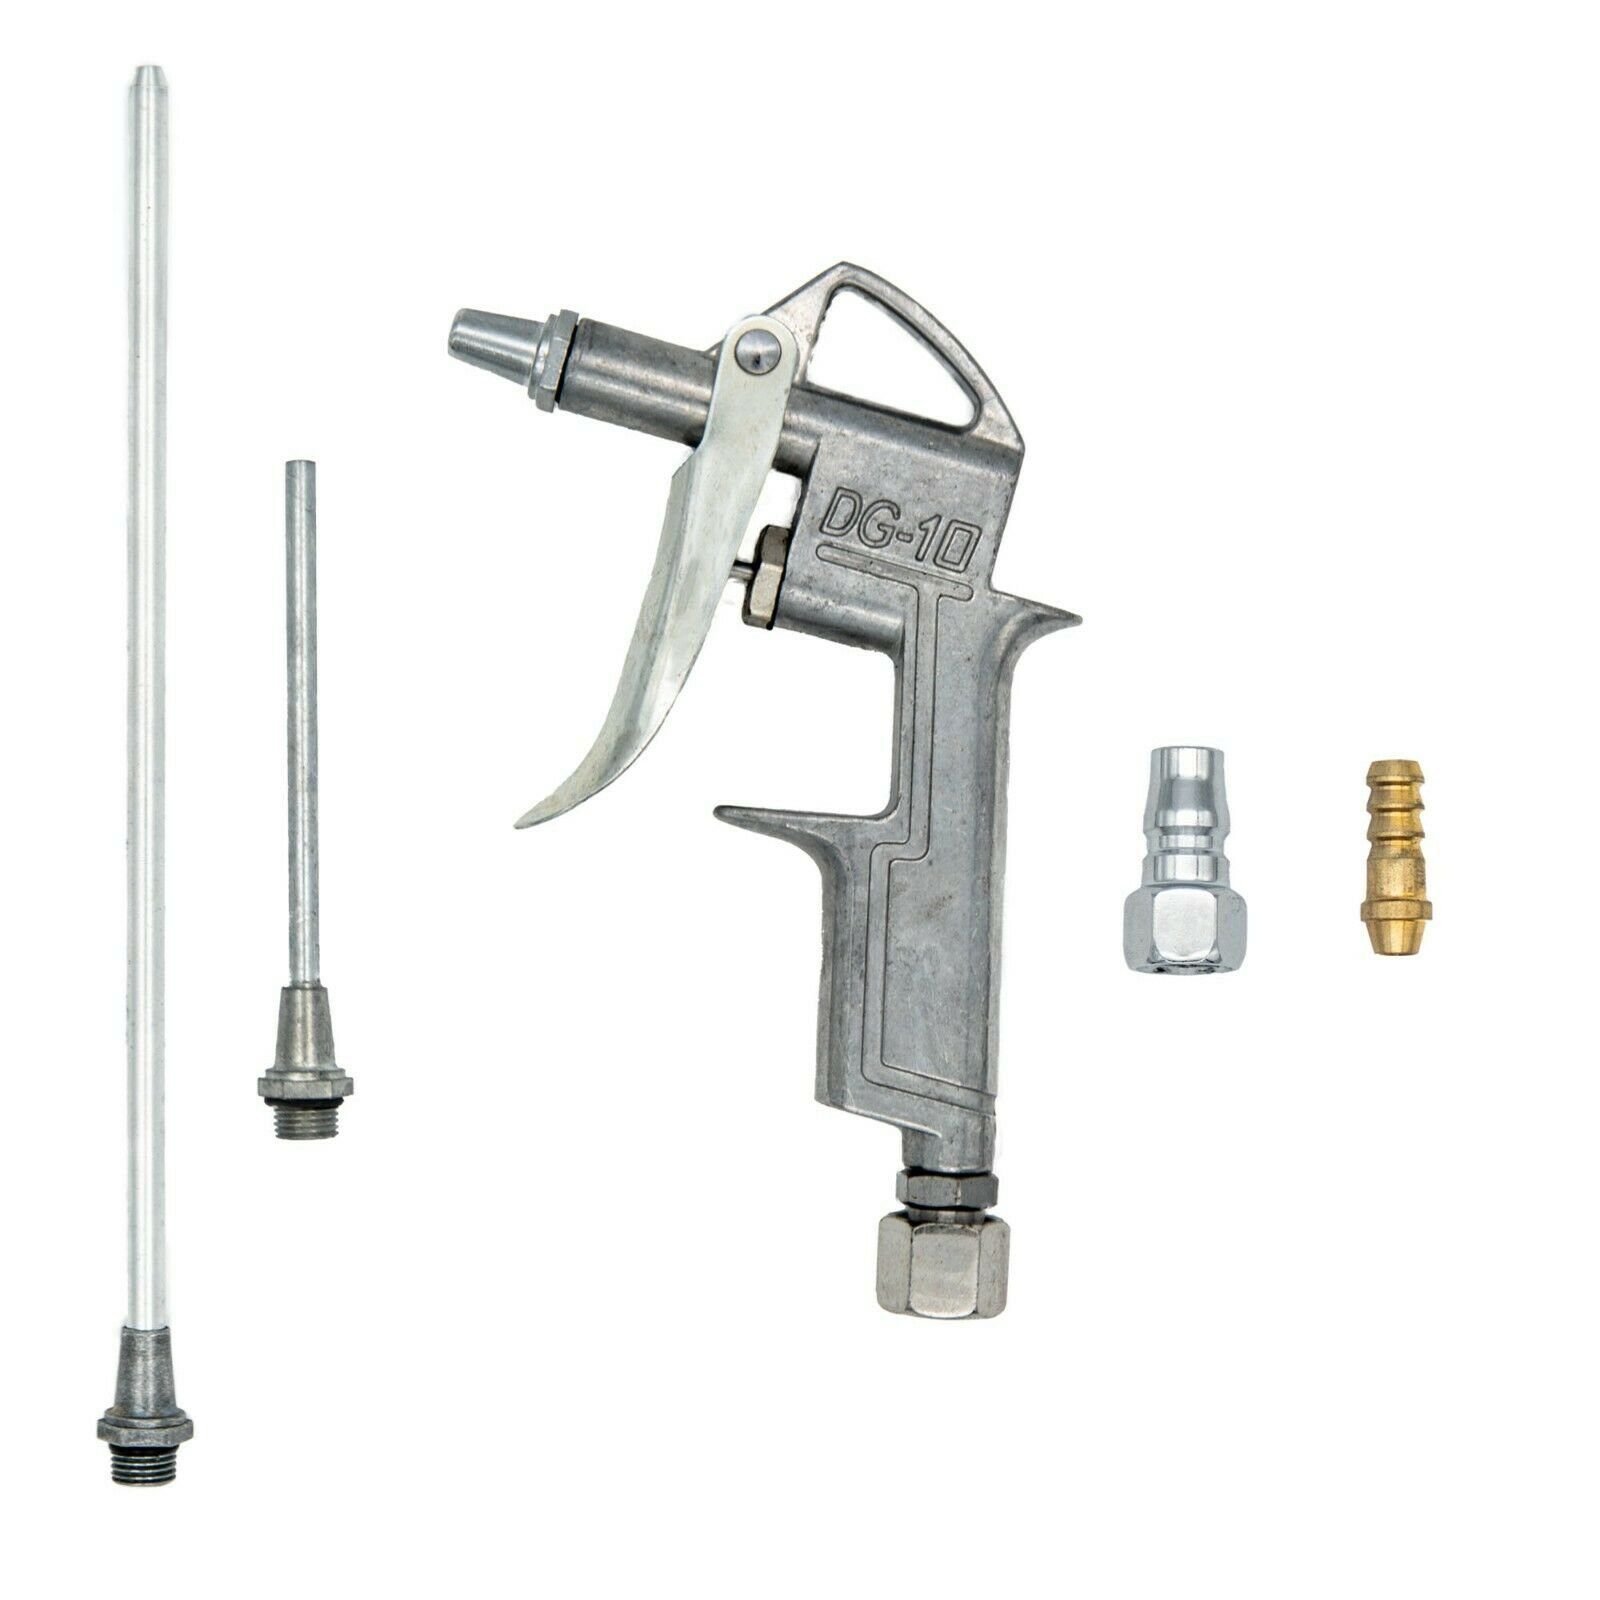 BENSON Druckluftwerkzeug Luftpistole Druckluftpistole Ausblaspistole, Kompressor, Set, Luft tlg Druckluft, 6